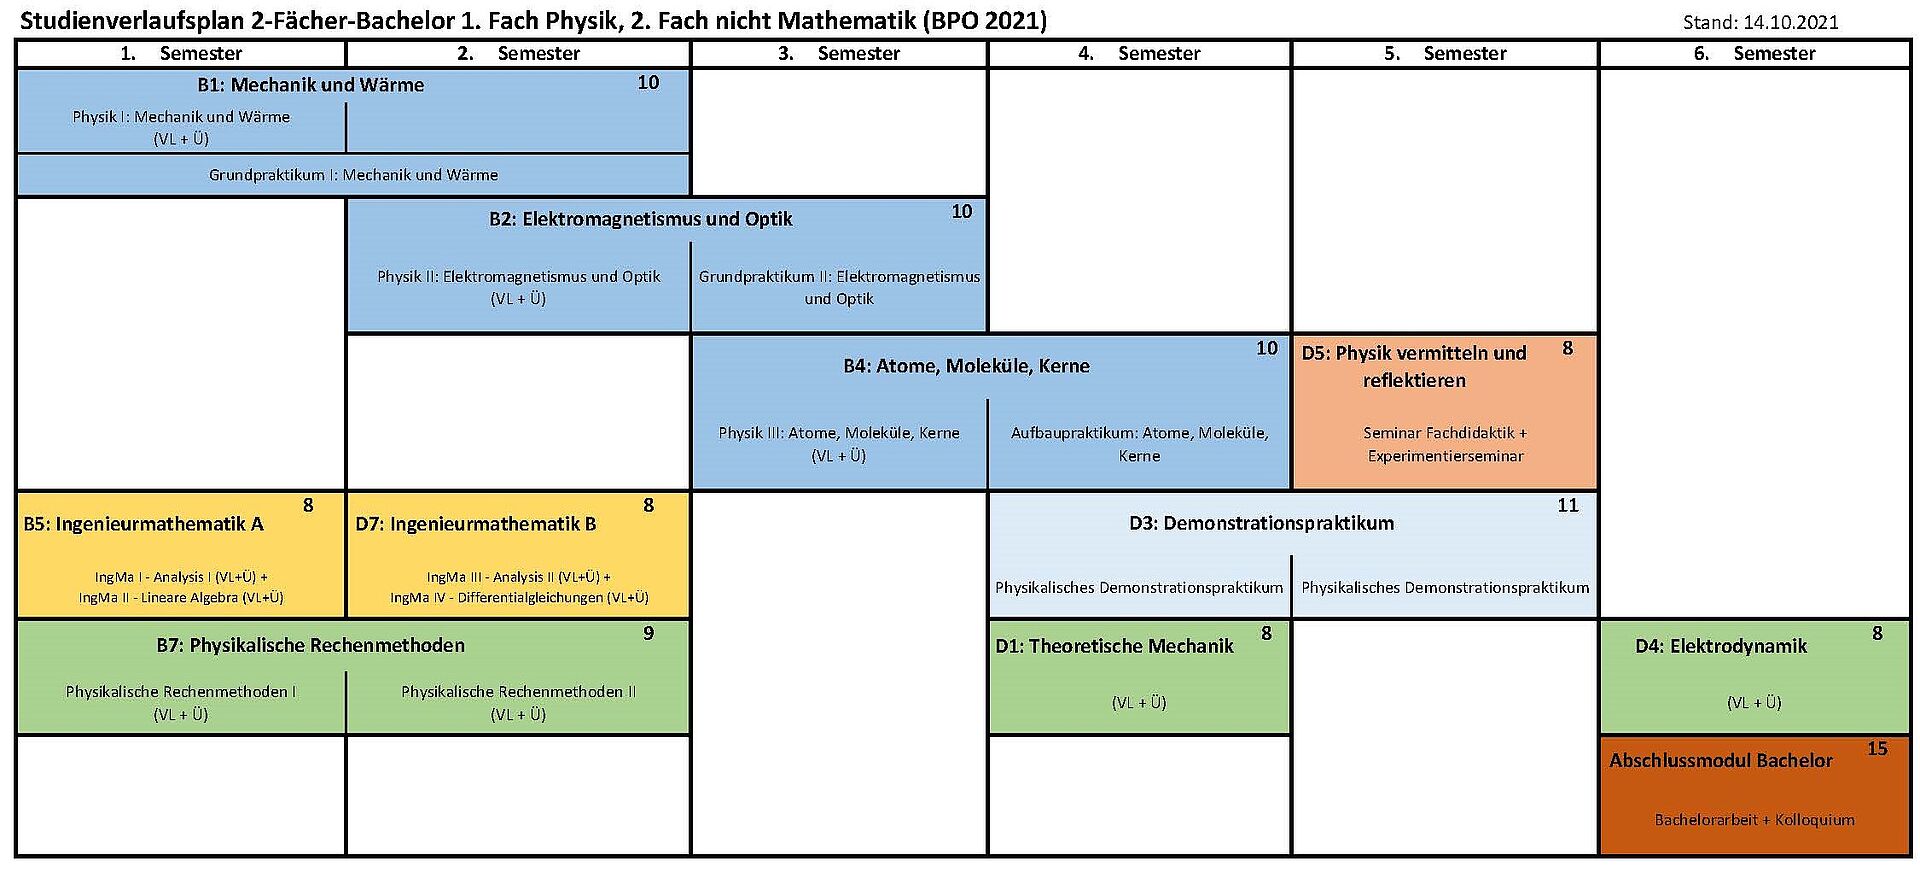 Musterstudienverlaufsplan 2-Fächer Bachelor 1. Fach Physik, 2. nicht Mathe (BPO 2021)